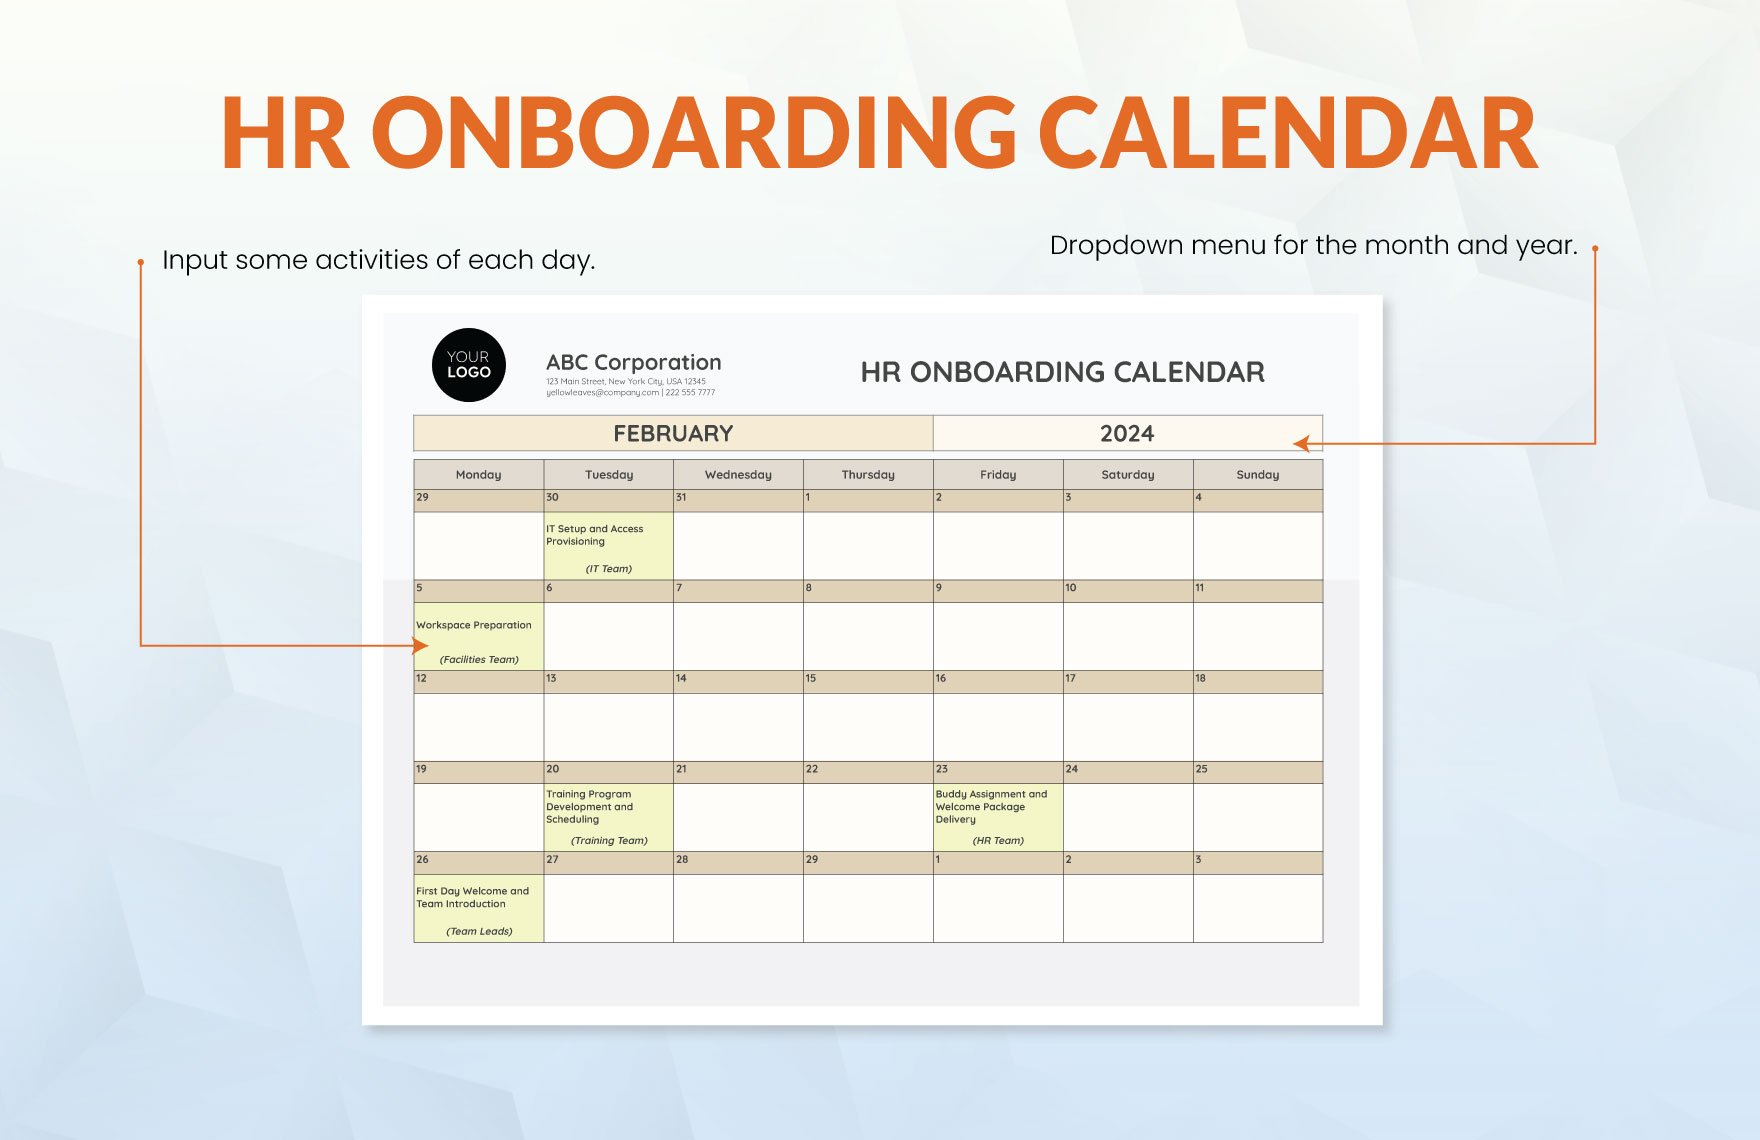 HR Onboarding Calendar Template